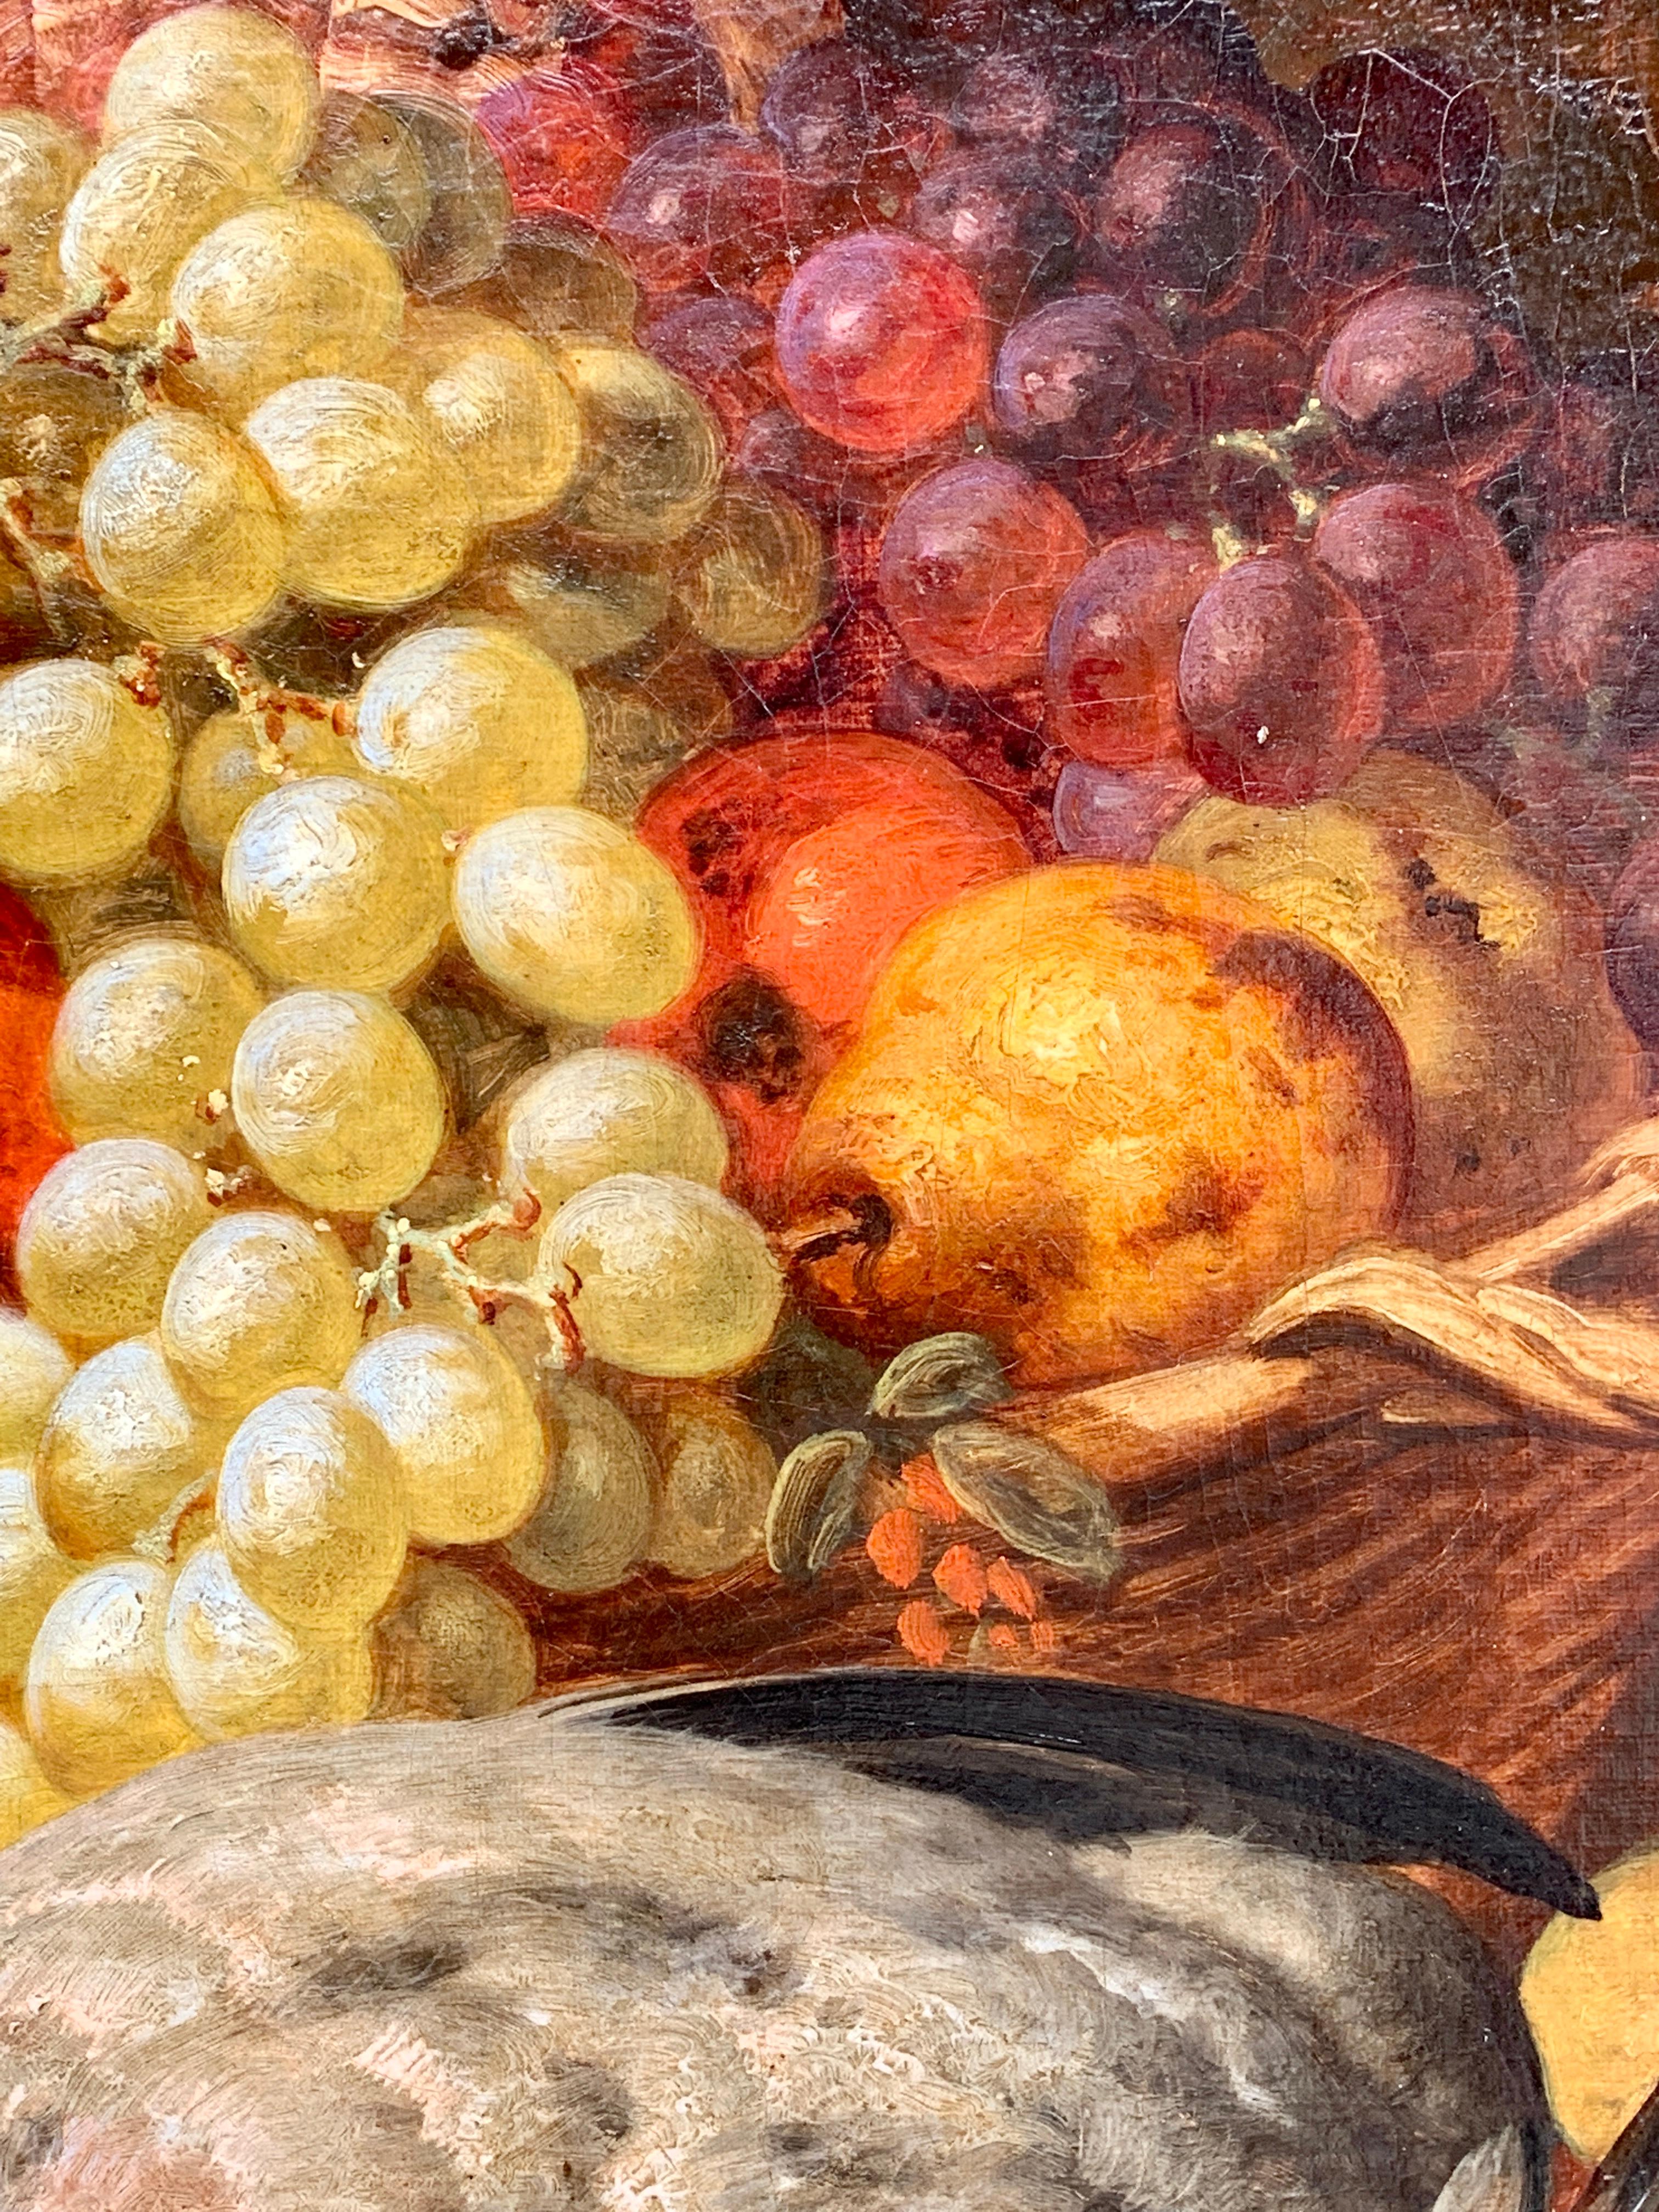 Huile anglaise du 19e siècle représentant une nature morte de fruits, pigeons, pommes, poires, raisins.

Charles Thomas Bale est né à SOHO, Londres, en 1849. Il est le fils de Thomas Bale, un vannier. Son frère aîné, Thomas Charles Bale (1831-1899),